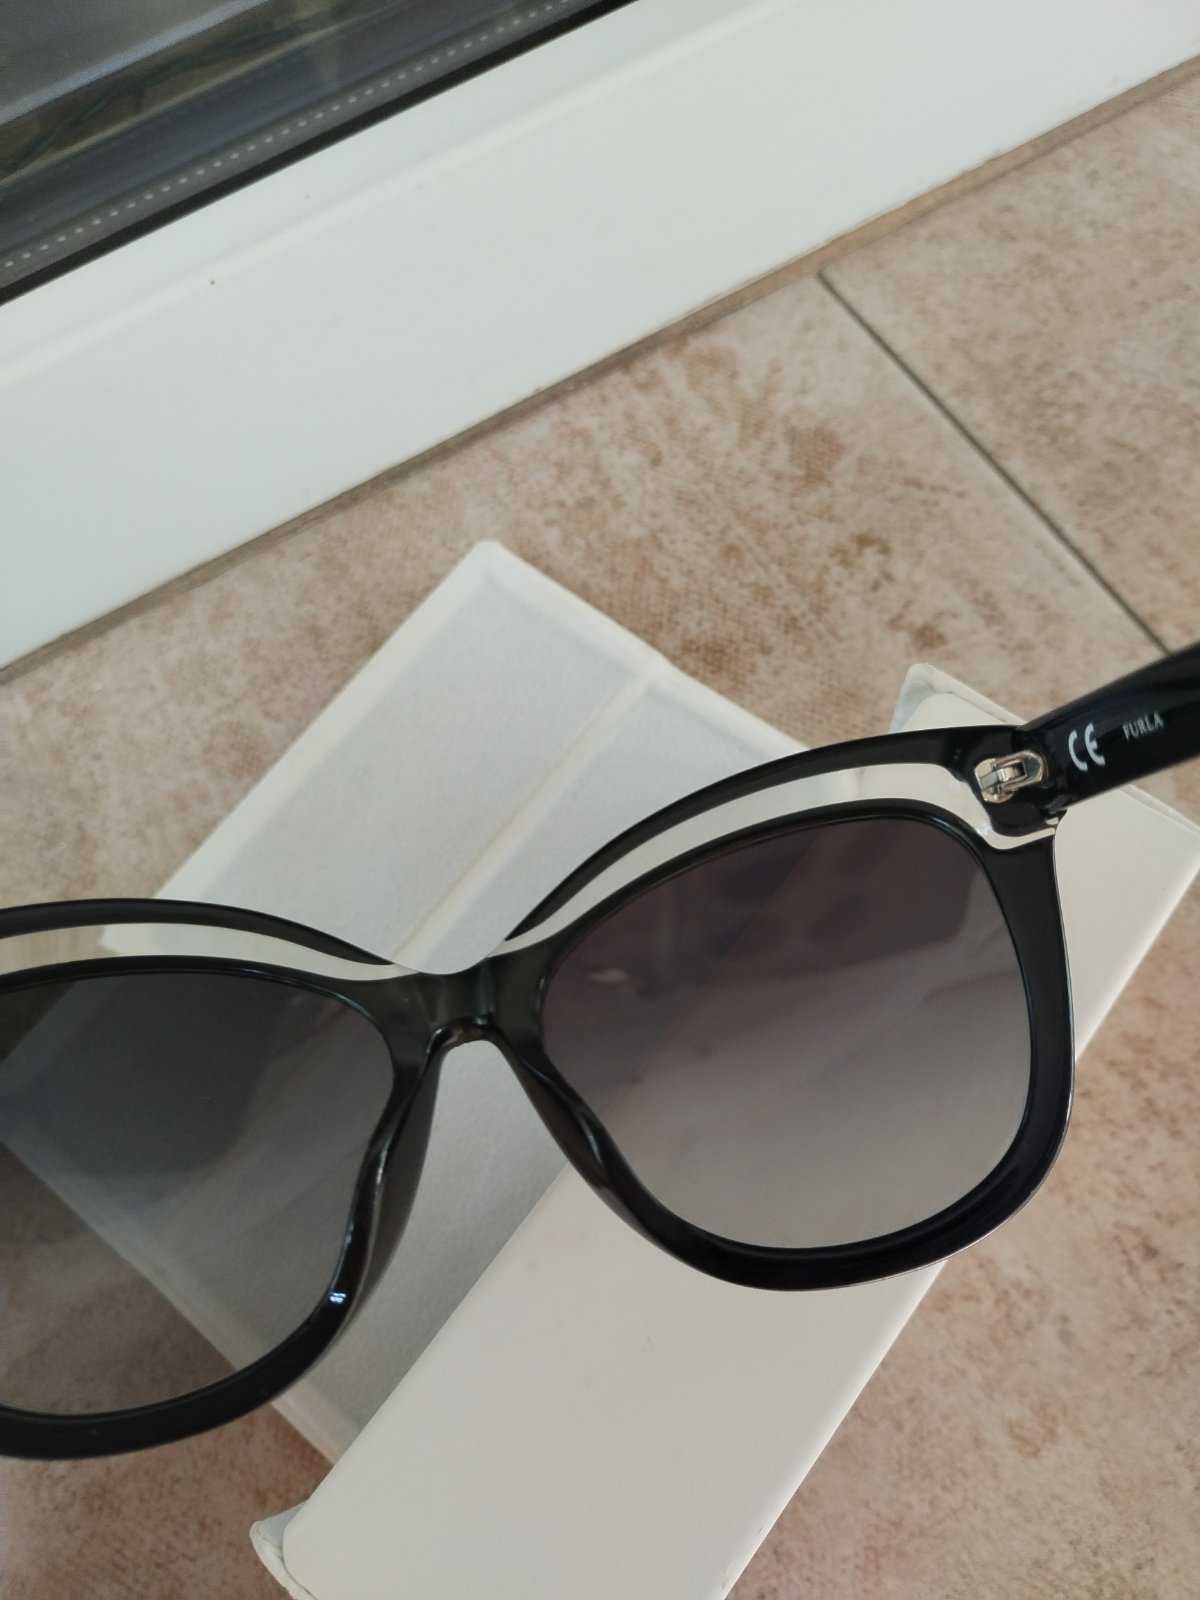 Оригинални слънчеви очила Furla с прозрачен елемент